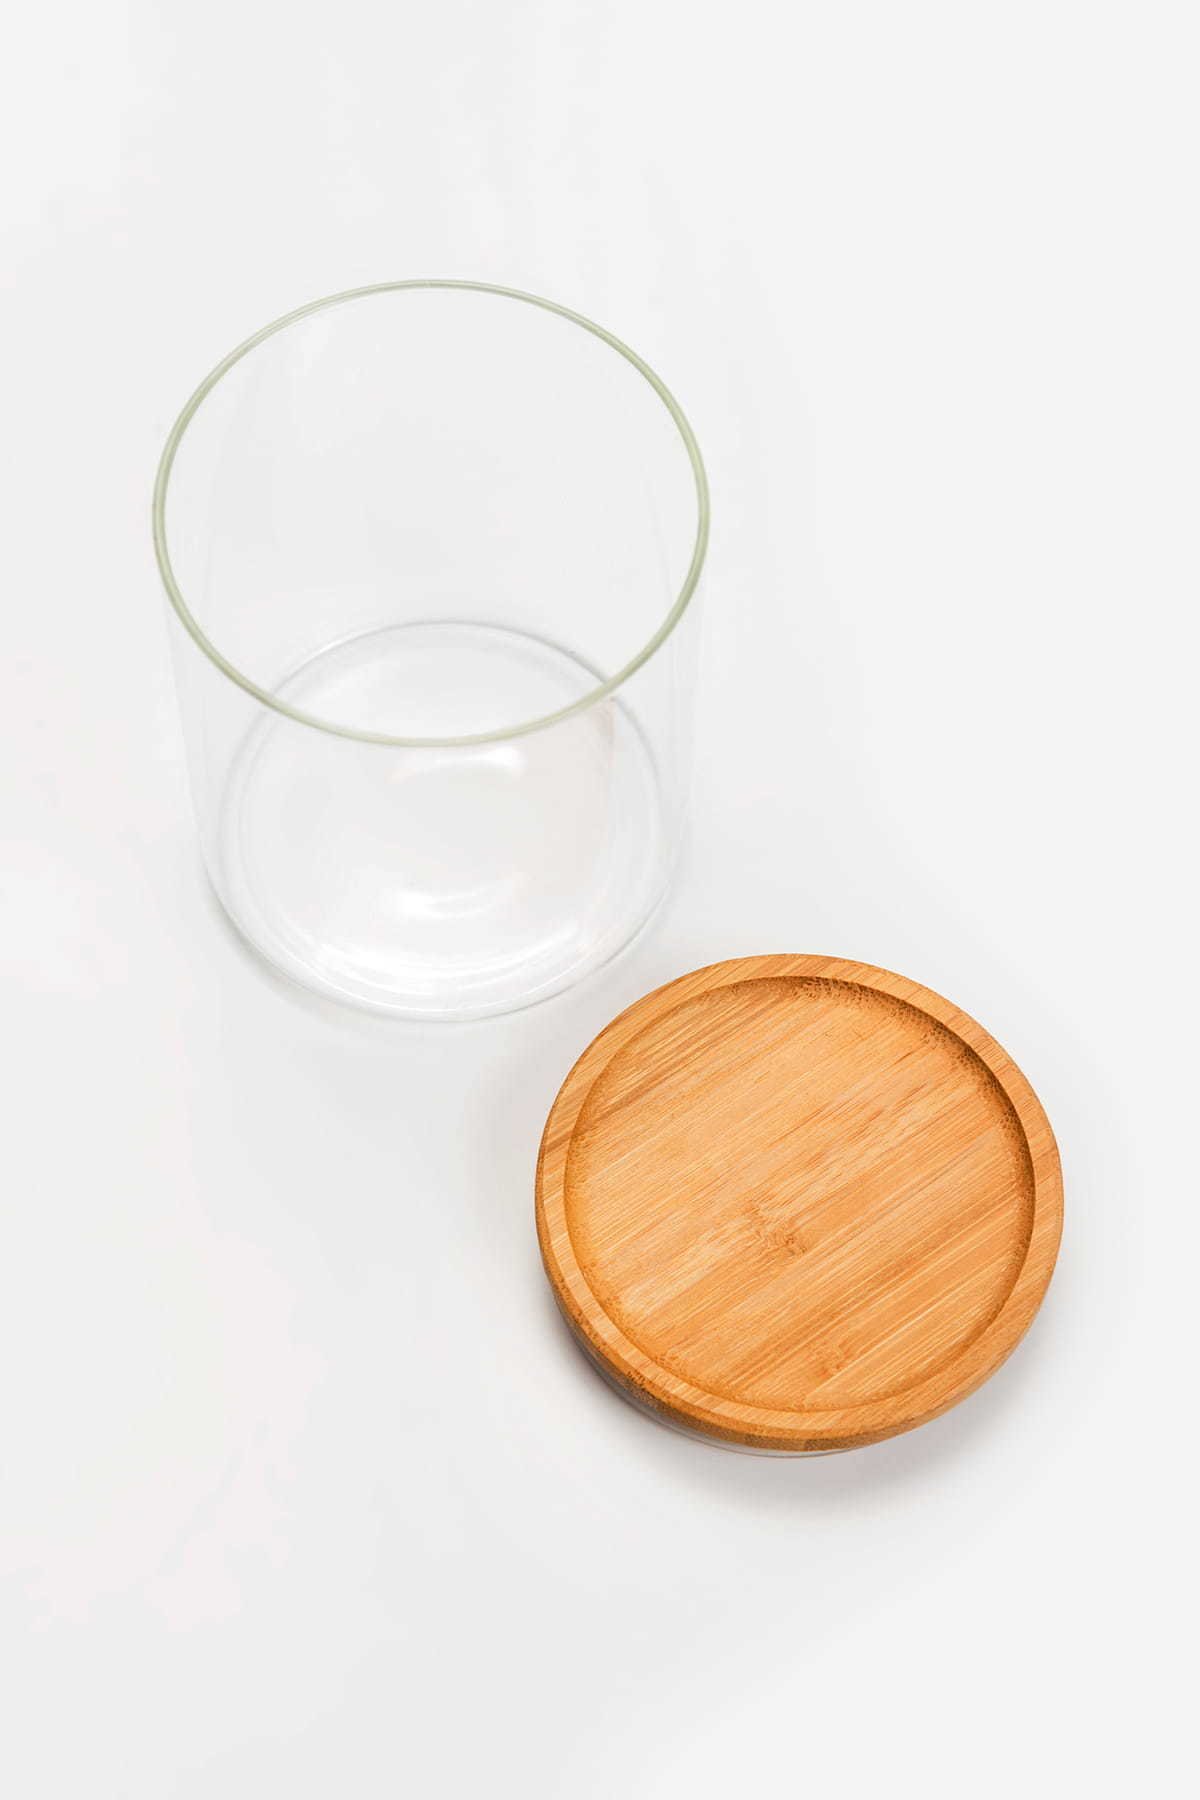 Birių produktų indas MPLco, stiklinis, su bambukiniu dangteliu, 10 x 13 cm - 3